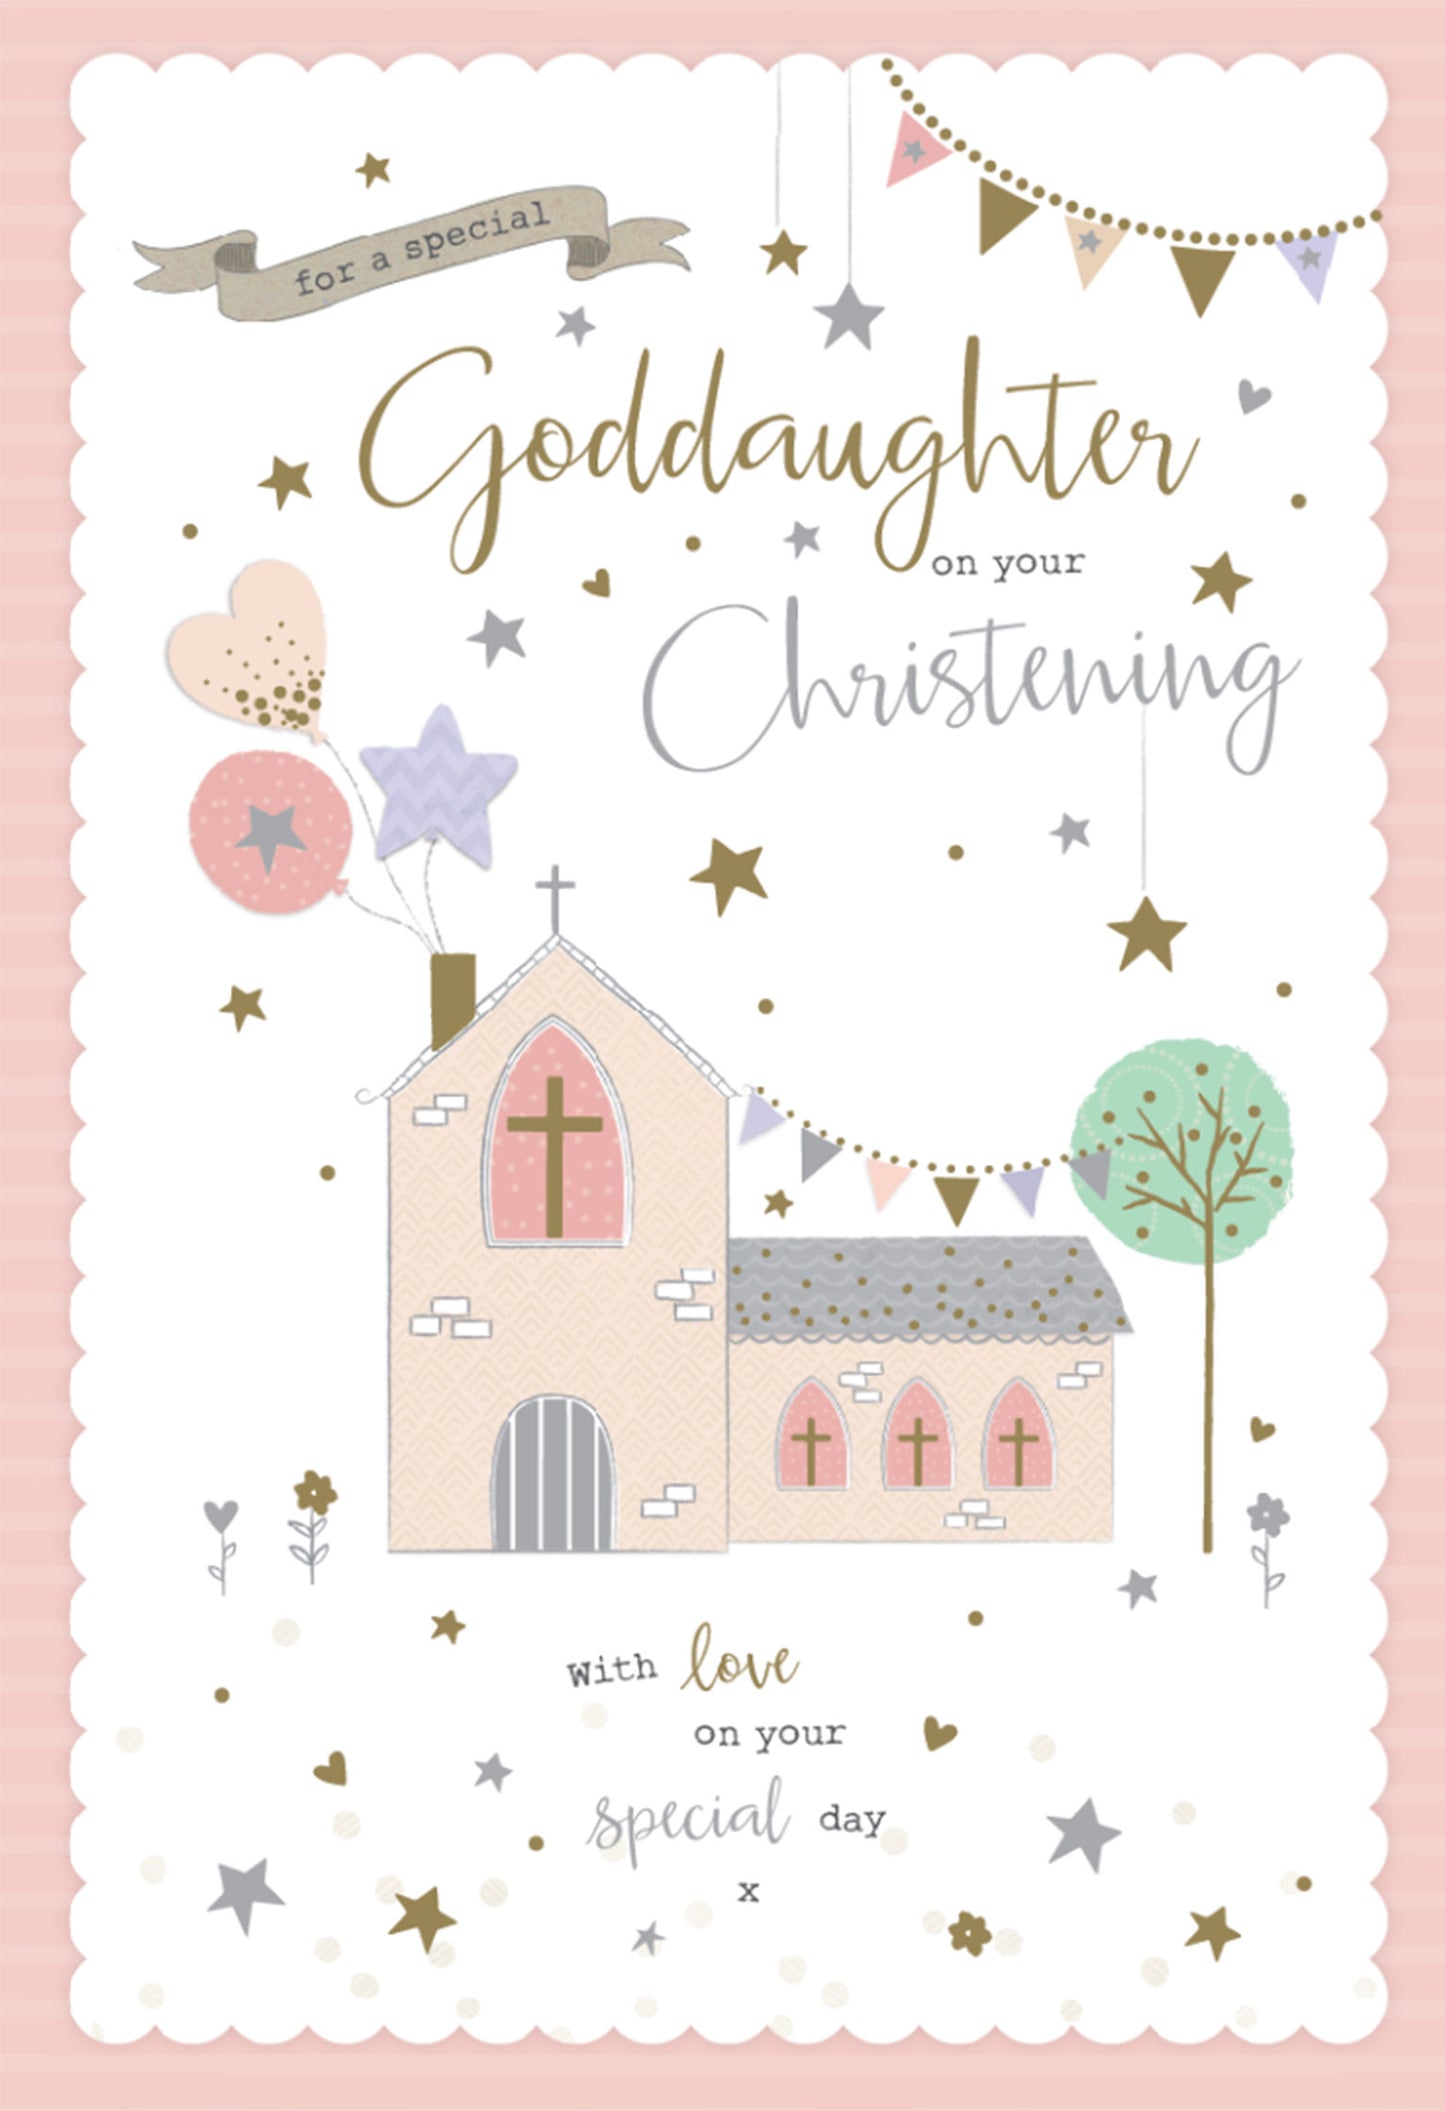 Goddaughter Christening